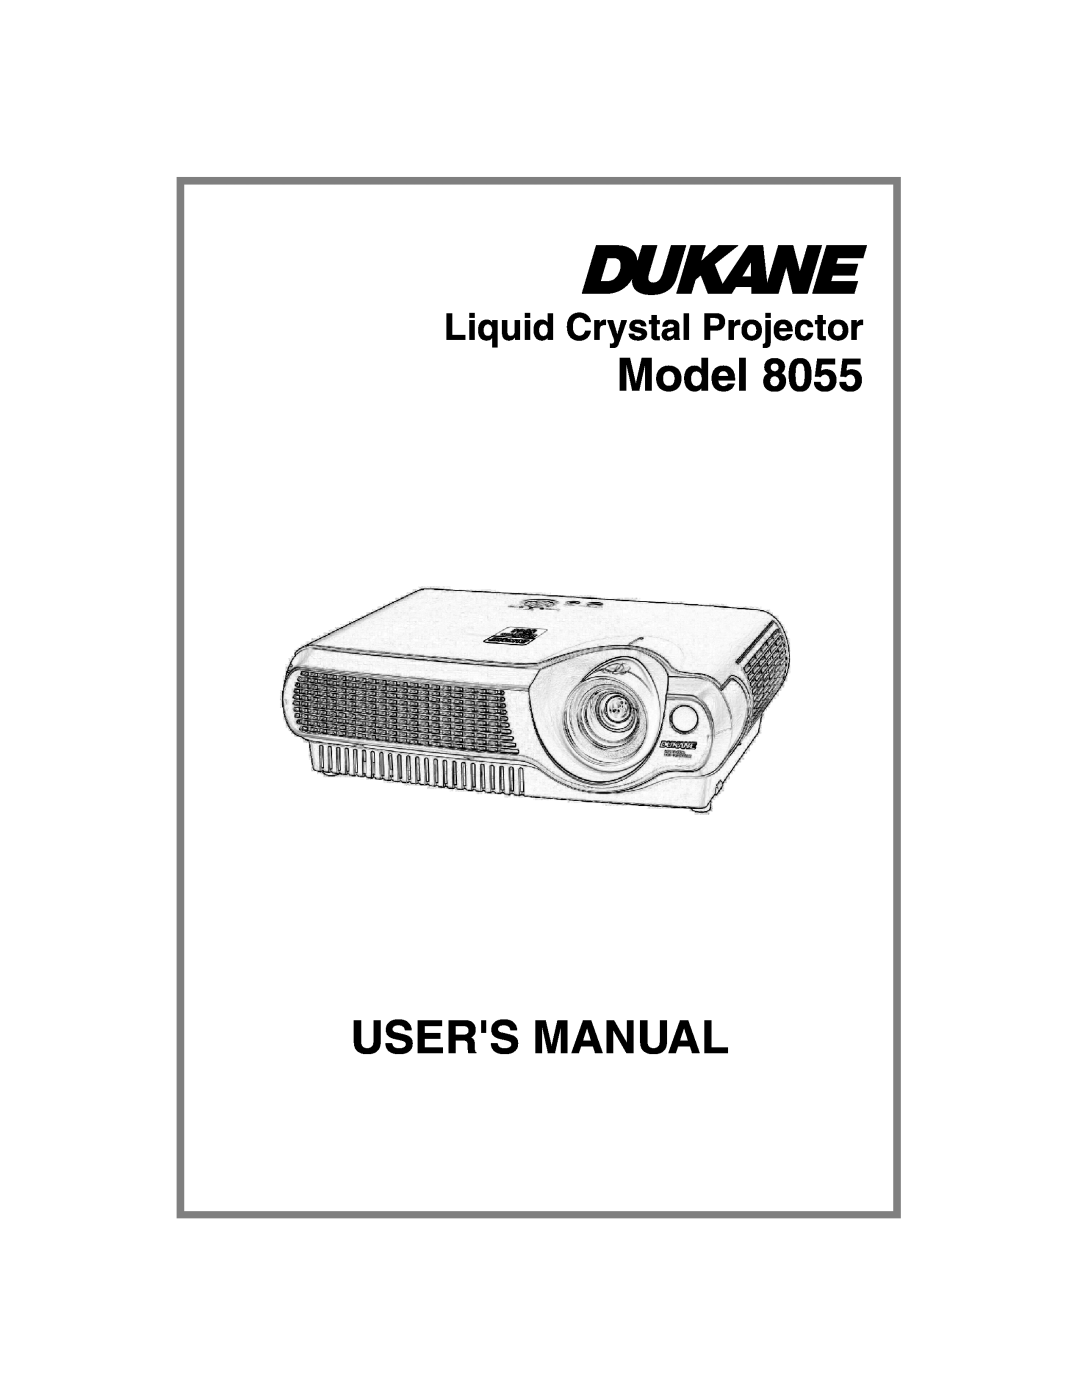 Dukane 8055 user manual Model, Users Manual, Liquid Crystal Projector 